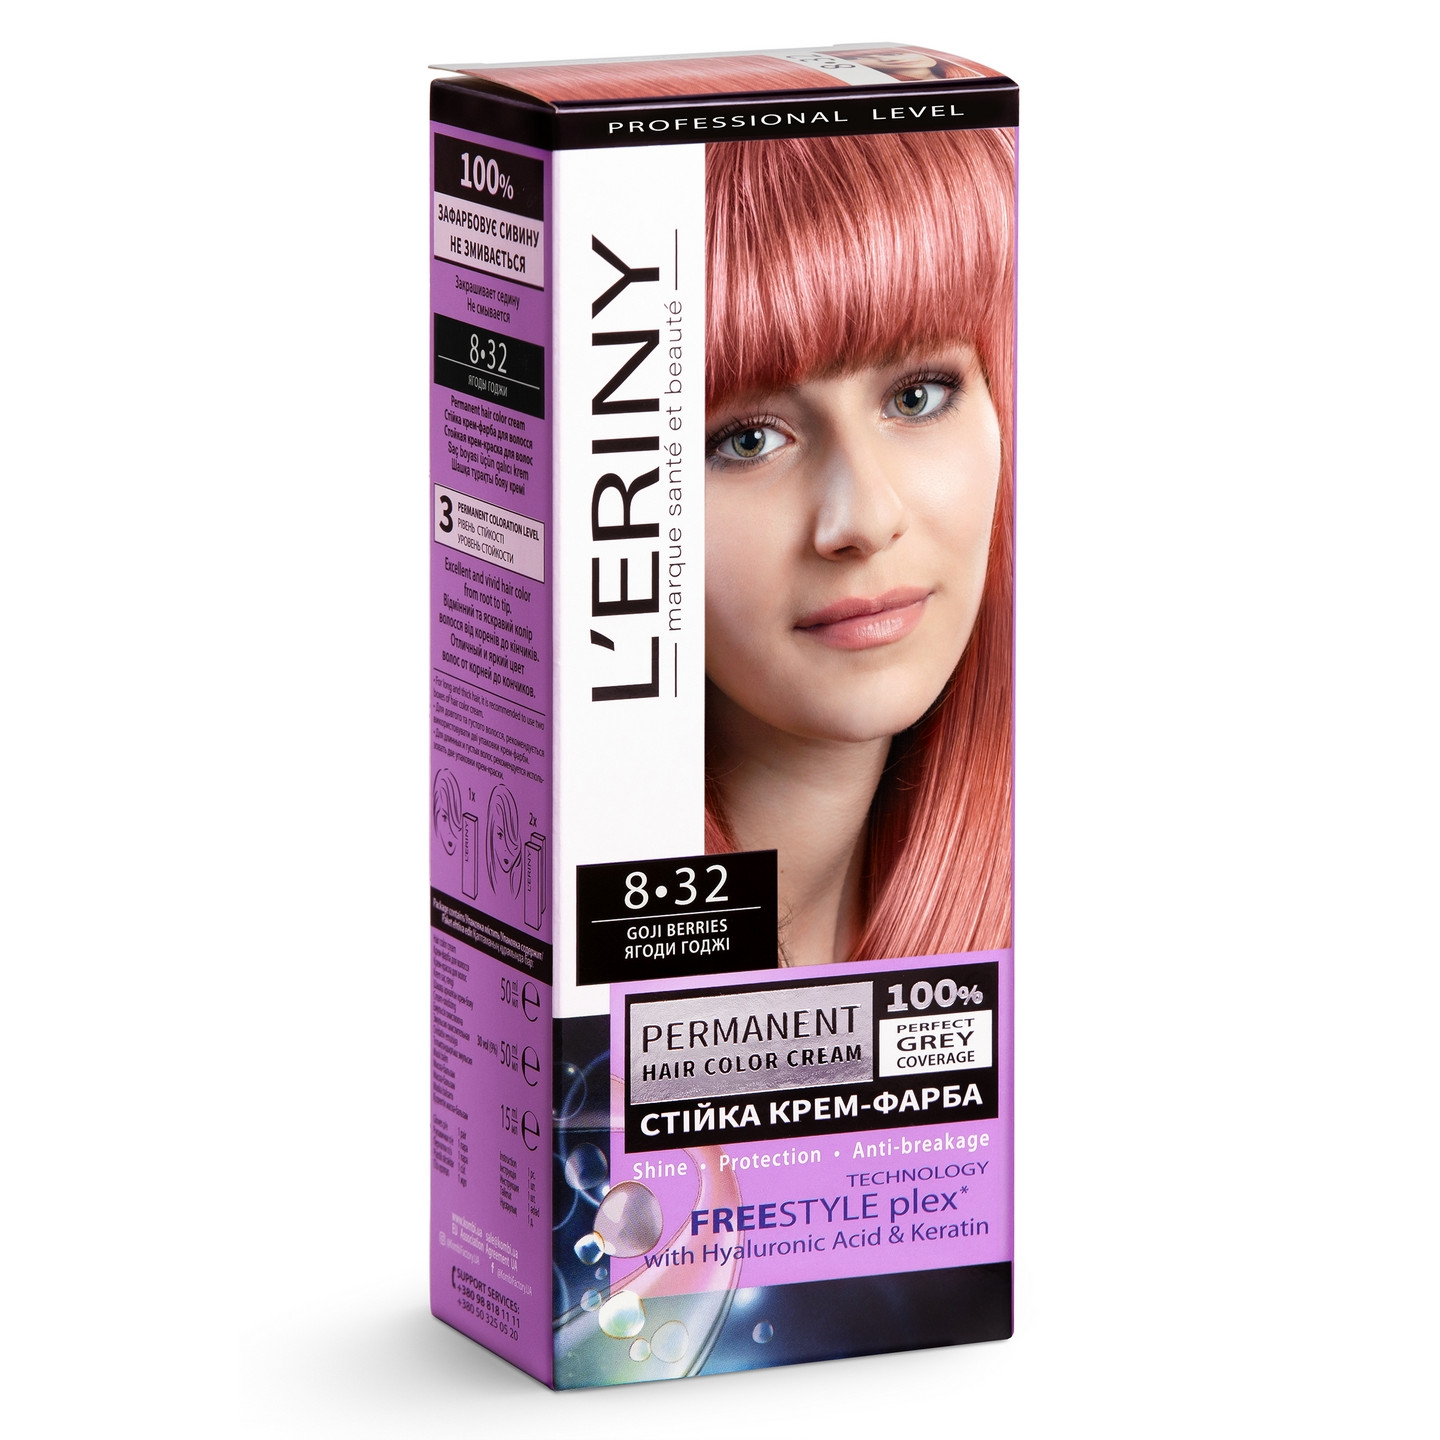 Стійка крем-фарба для волосся L’ERINY, 8•32 - ЯГОДИ ГОДЖІ